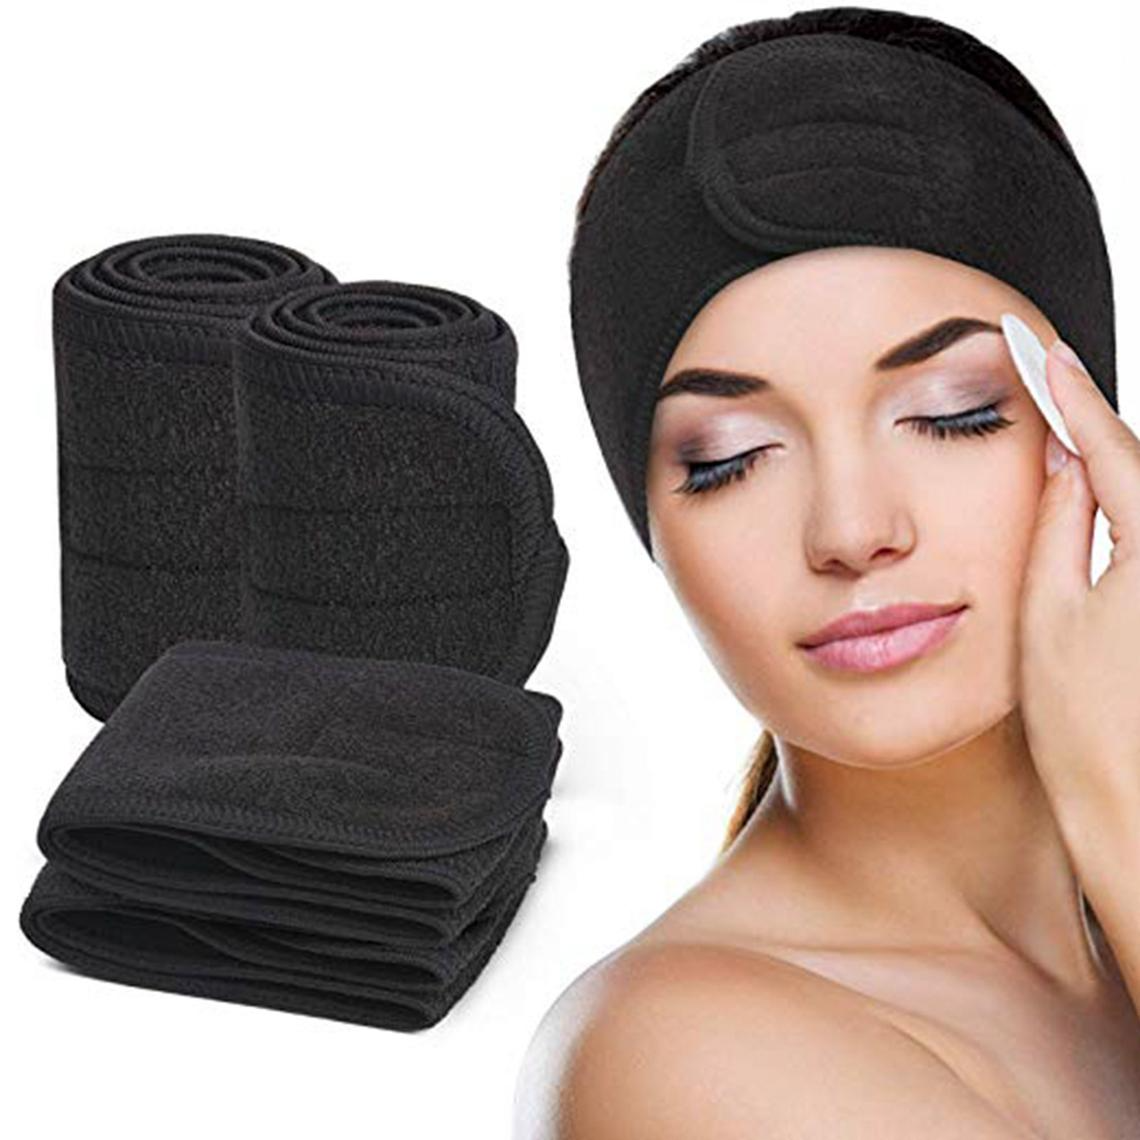 Creata Beauty - Spa Headband - Creata Beauty - Professional Beauty Products